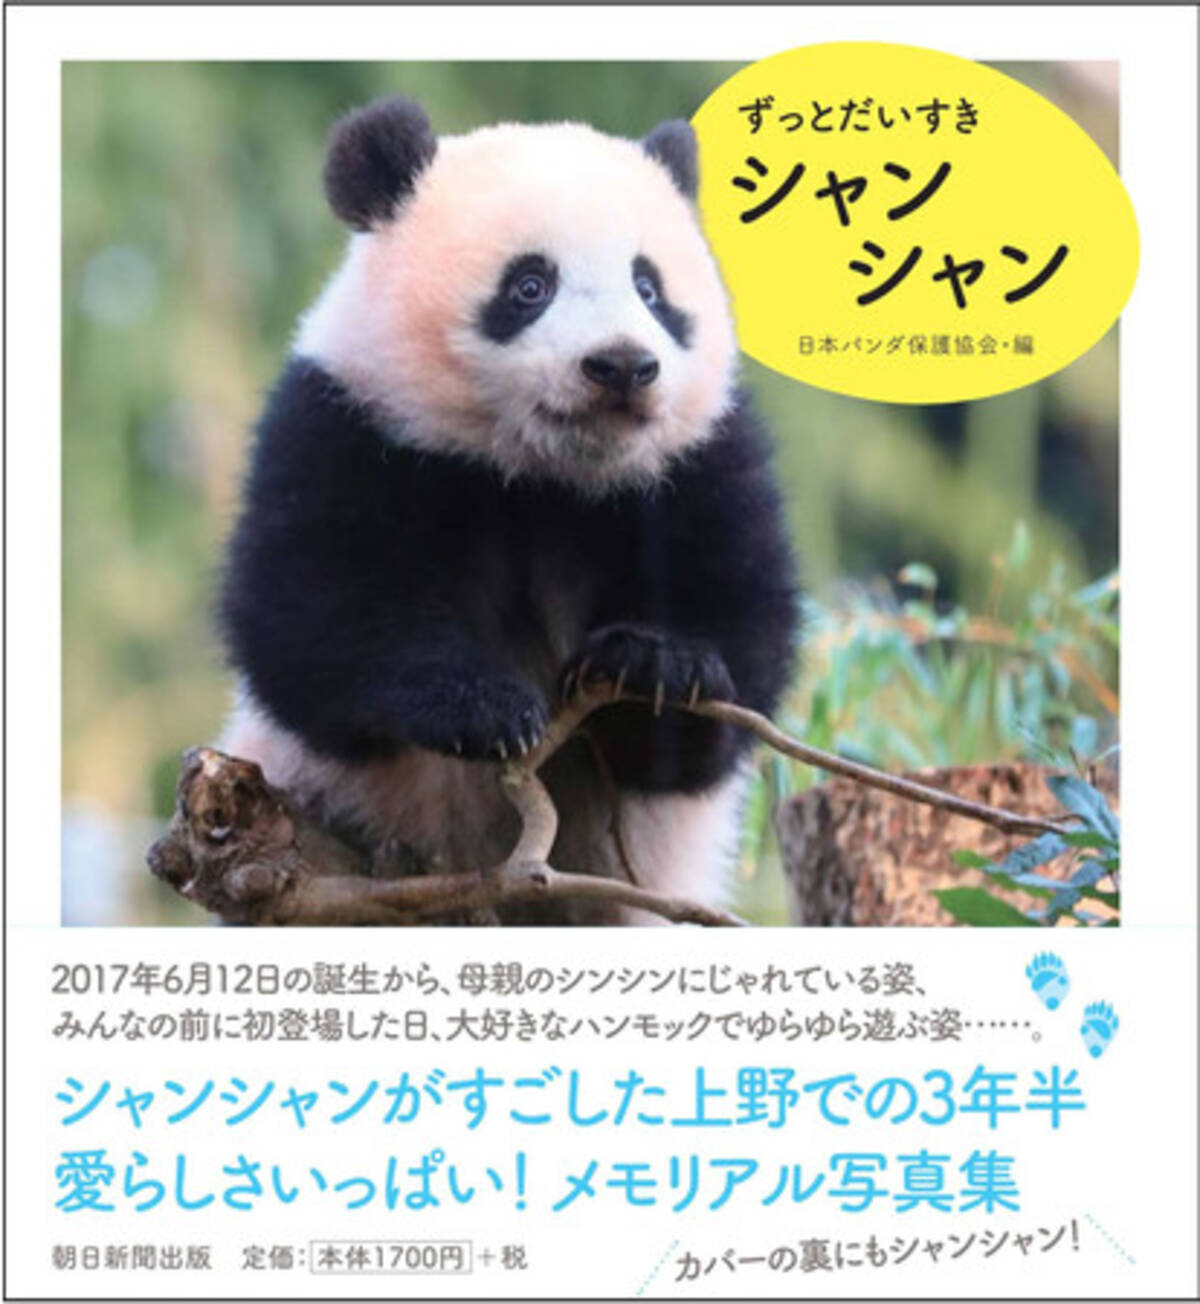 上野動物園の子パンダ シャンシャンとの3年半の思い出いっぱい メモリアル写真集 ずっとだいすきシャンシャン 発売 年11月25日 エキサイトニュース